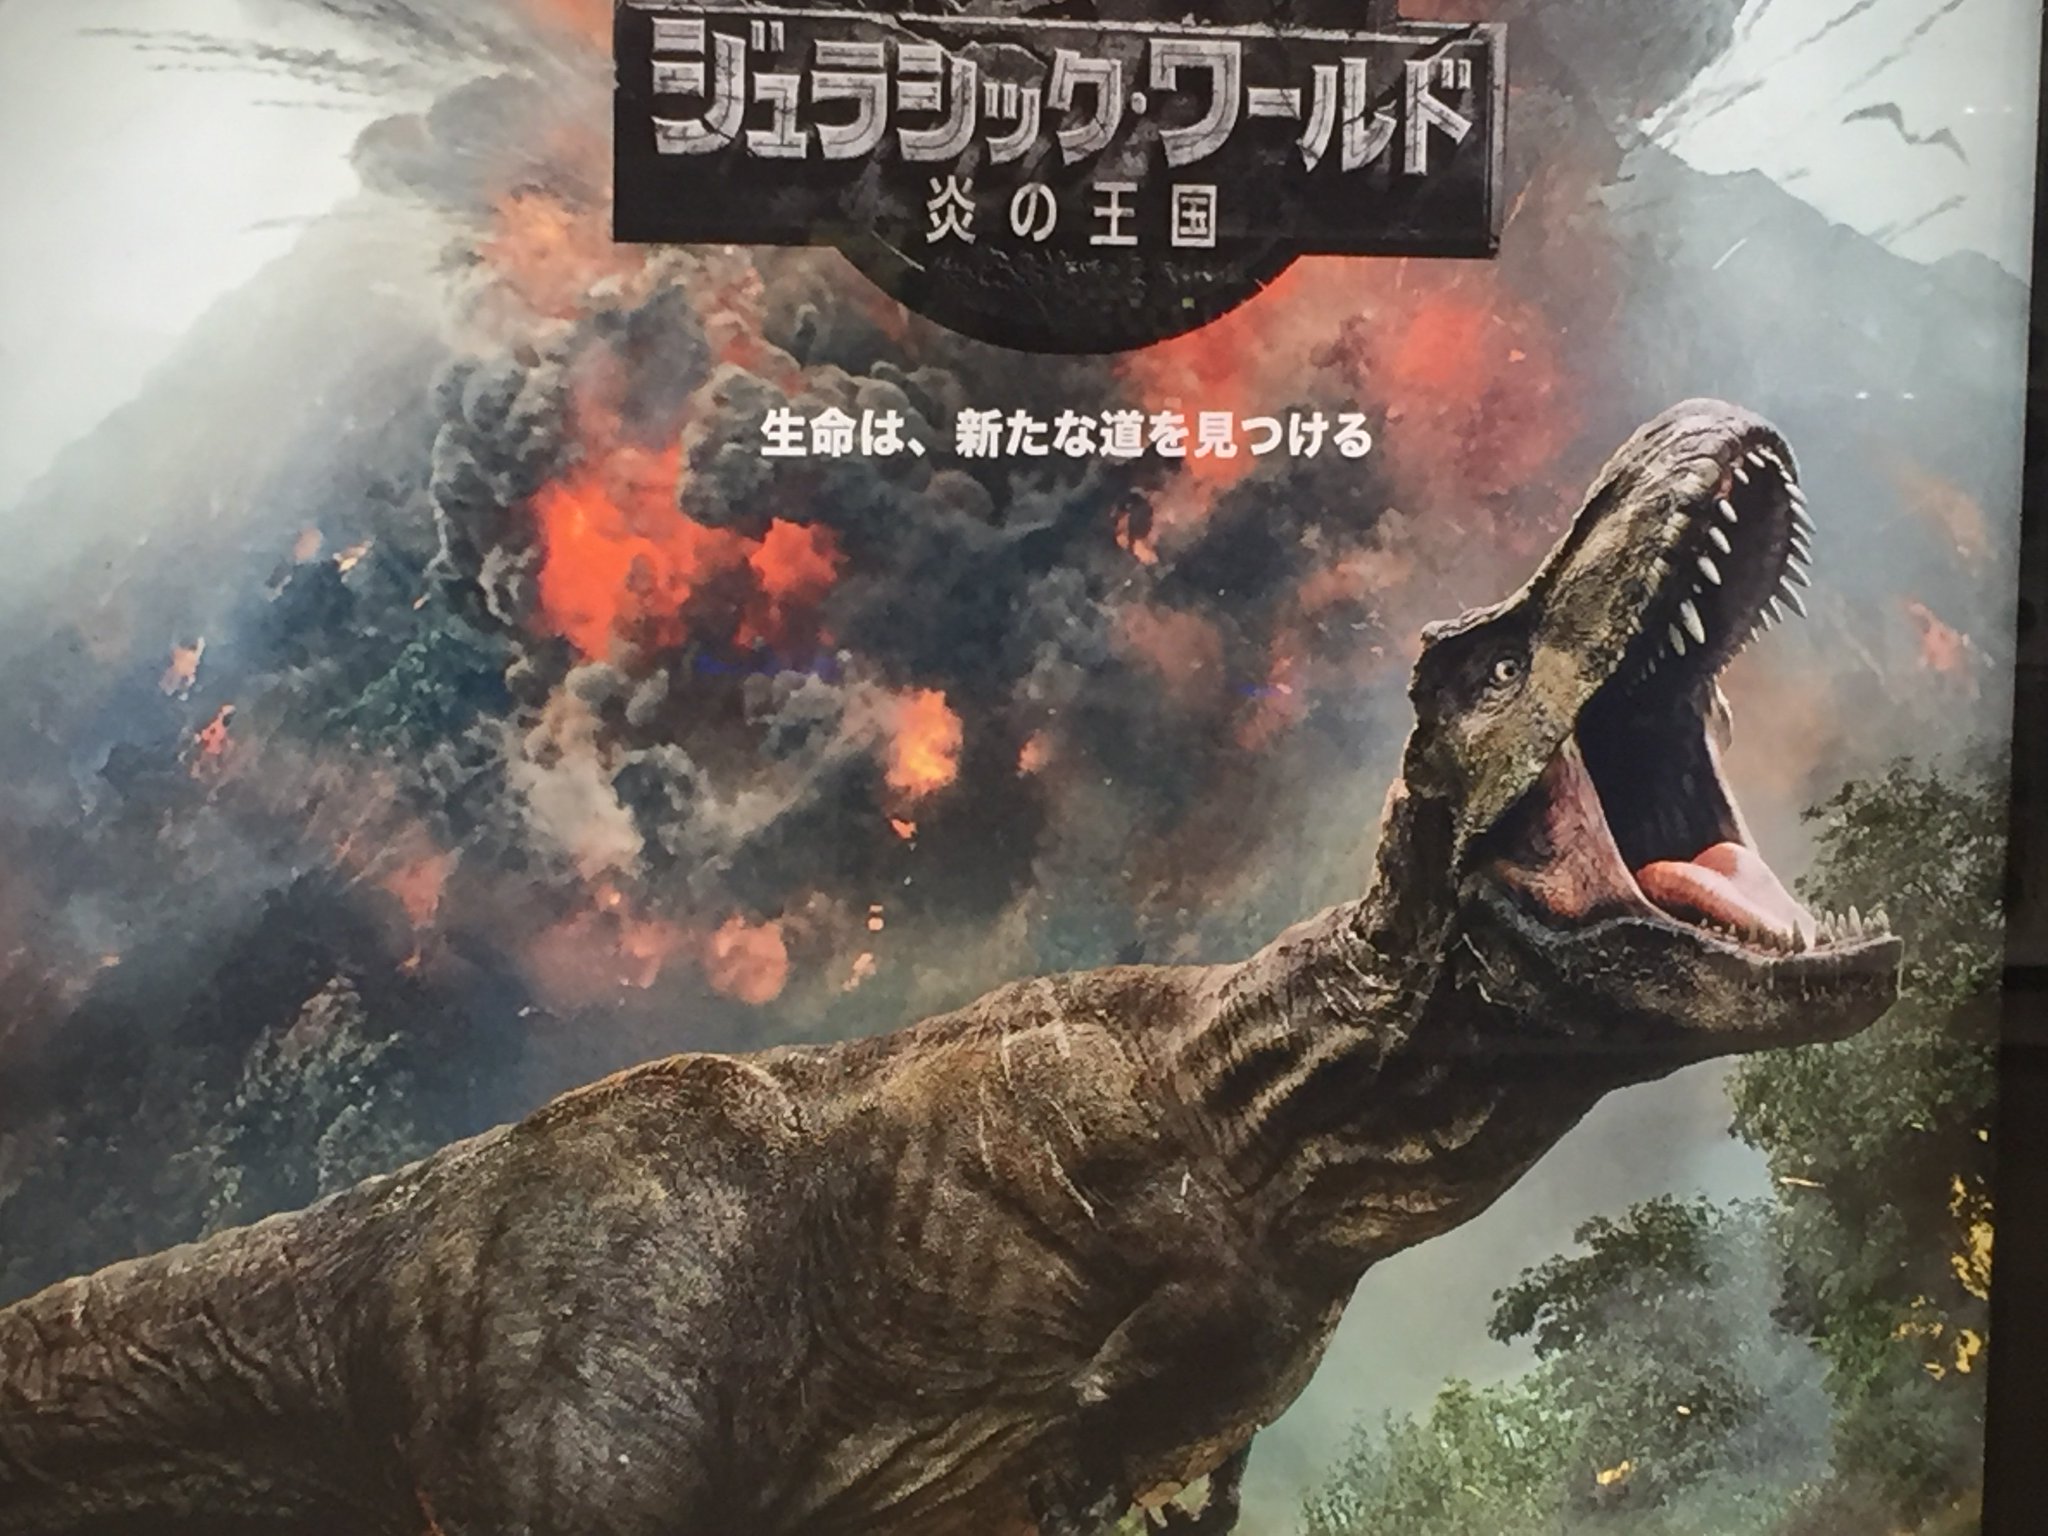 Oosa Twitterren ジュラシック ワールド 炎の王国 ジュラシックシリーズは活躍 躍動する数多くの恐竜が観れて本当に楽しい 崩壊したテーマパークの恐竜が主役なんて設定そのものも面白い 噴火が近づく地響き 恐竜の咆哮 大画面 大音響 映画館ならではの